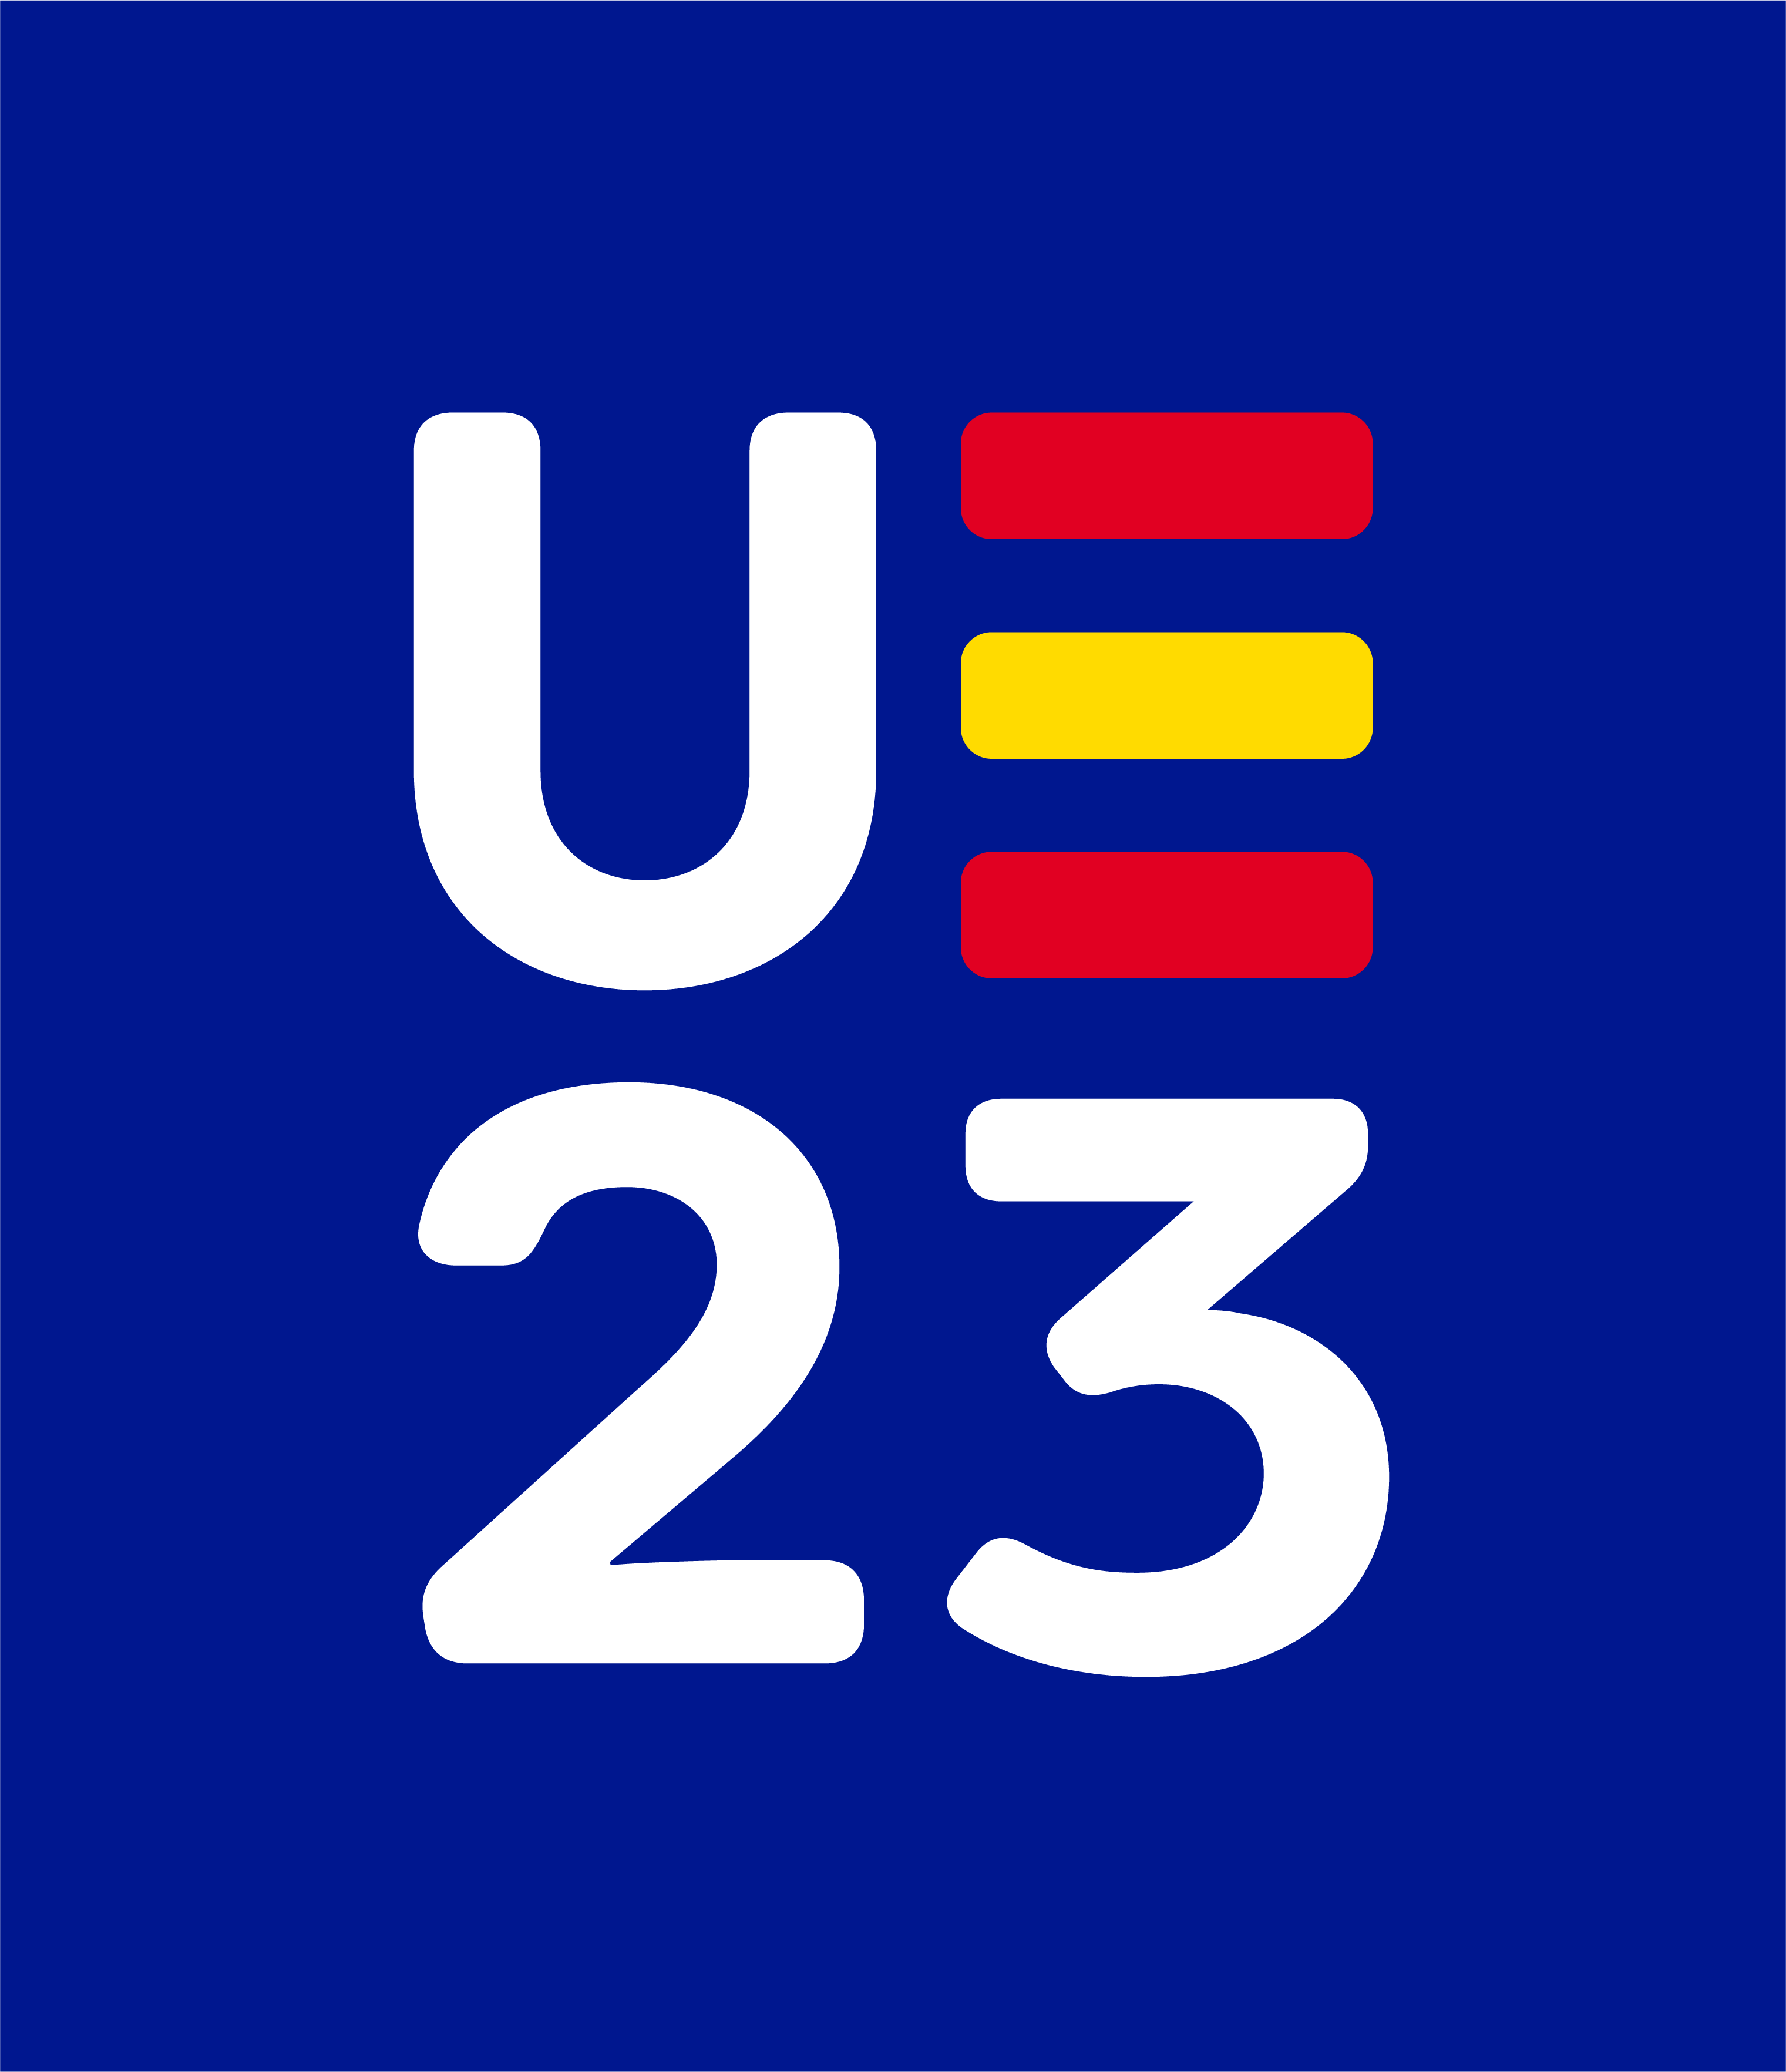 UE 2023